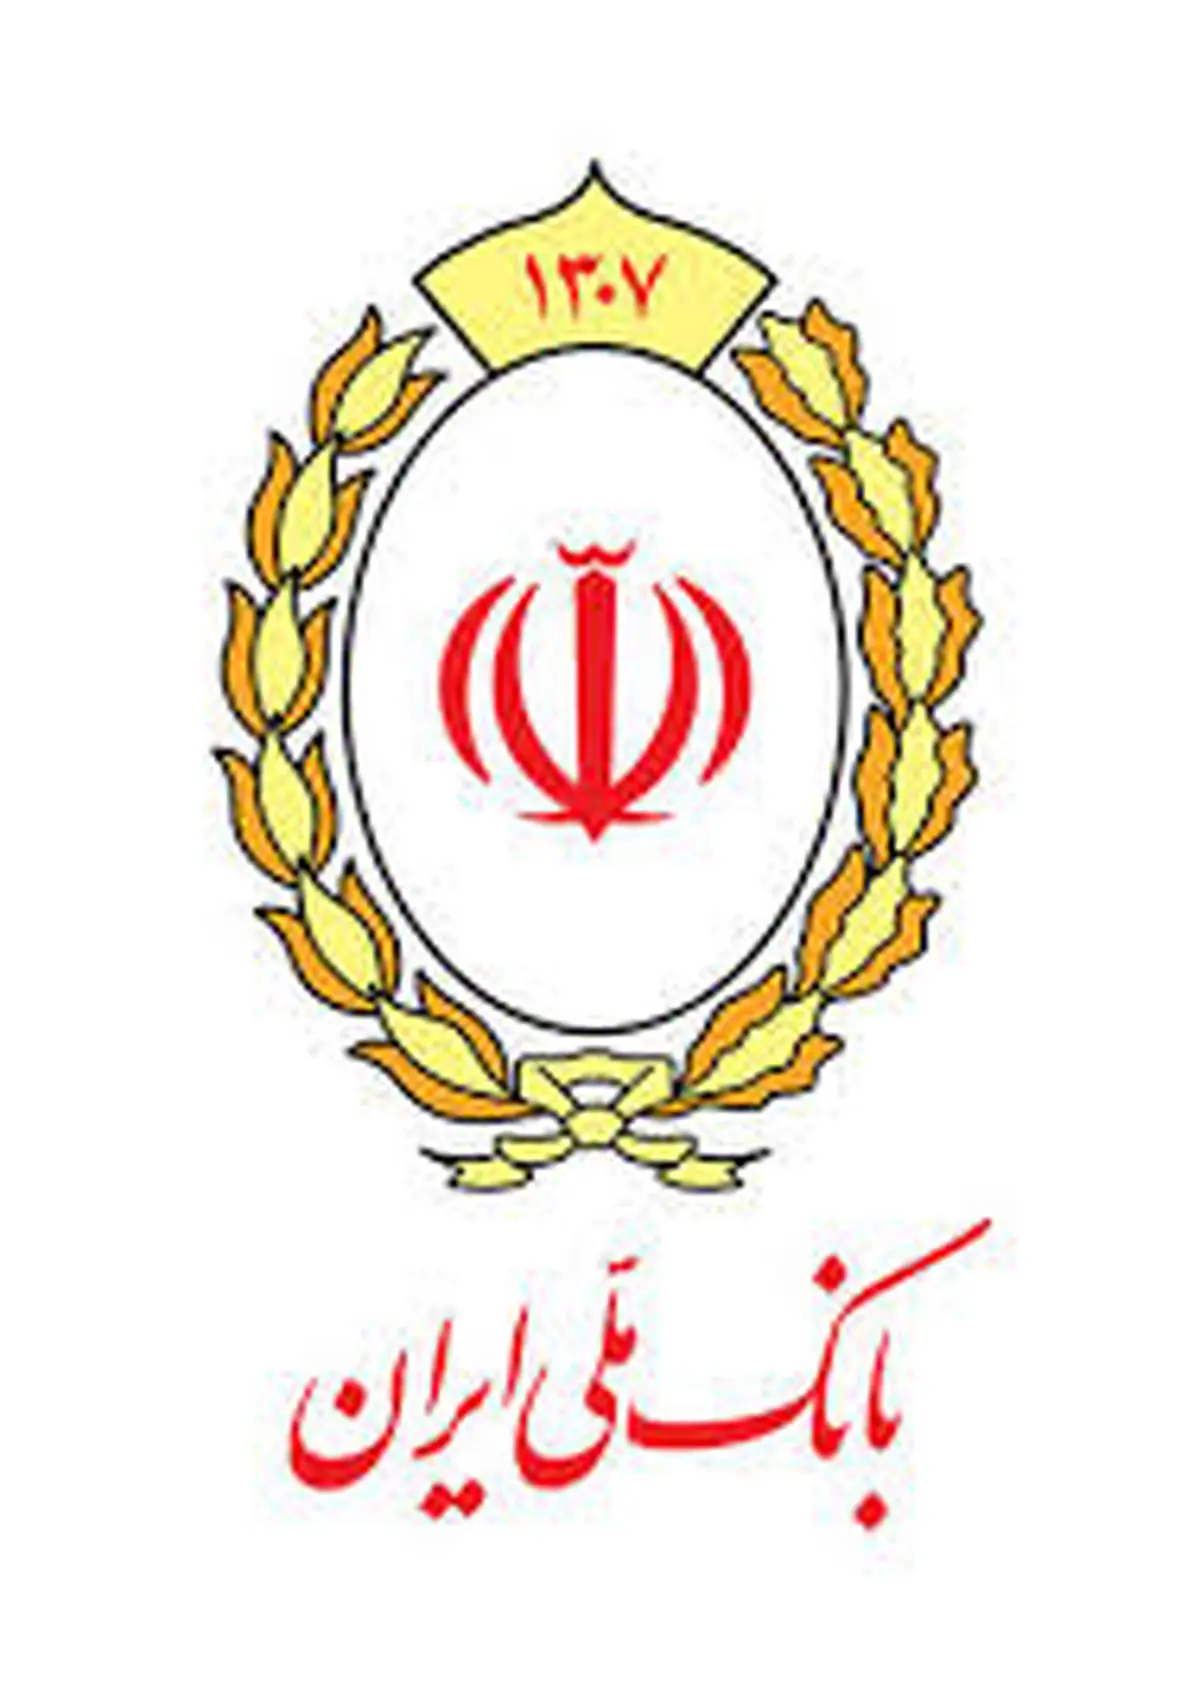 یک میلیون بنگاه اقتصادی از بانک ملی ایران وام گرفتند

